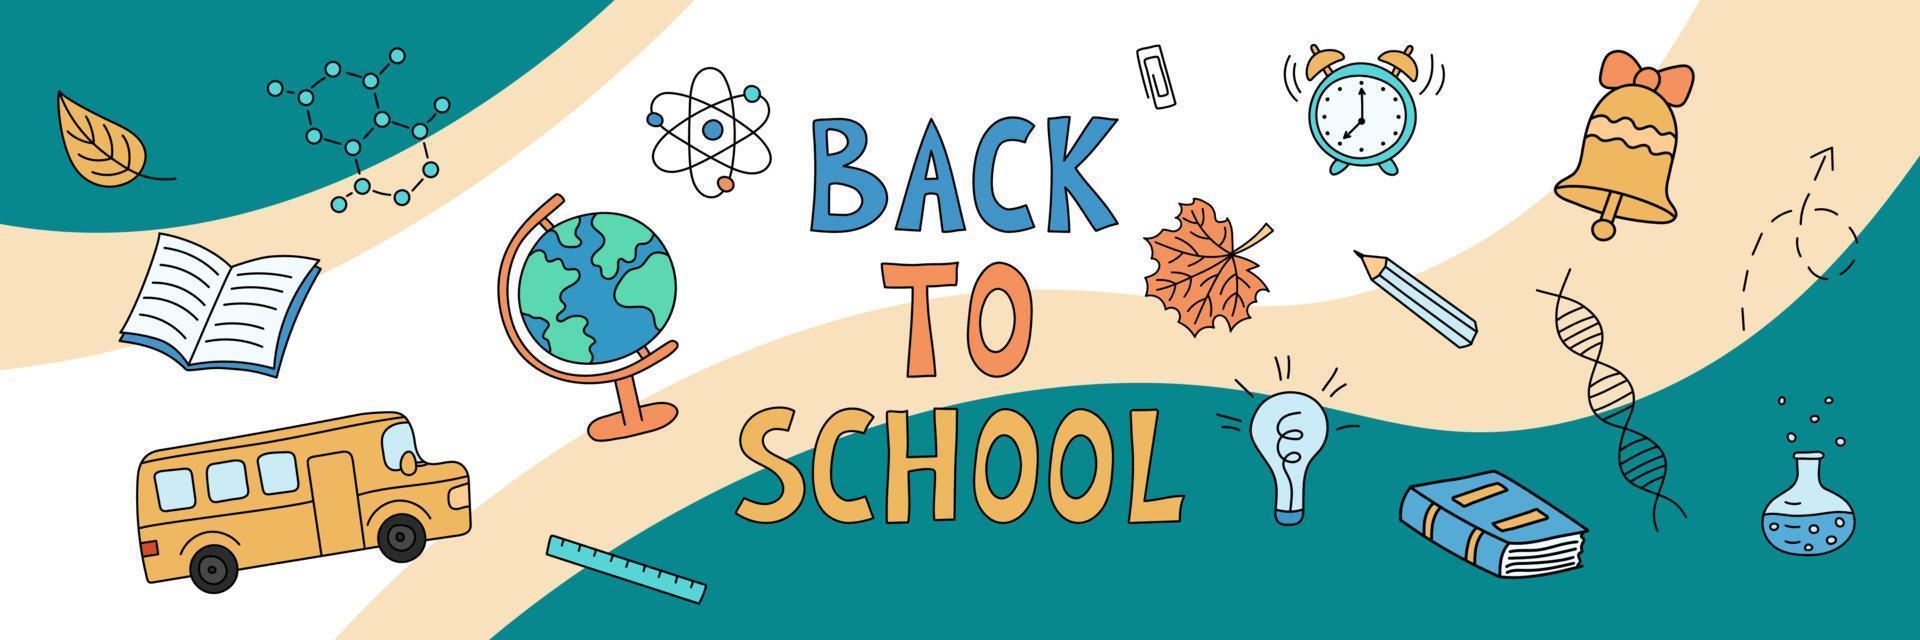 banner web de regreso a la escuela. escuela doodle objetos sobre fondo abstracto. vector dibujado a mano ilustración de elementos educativos